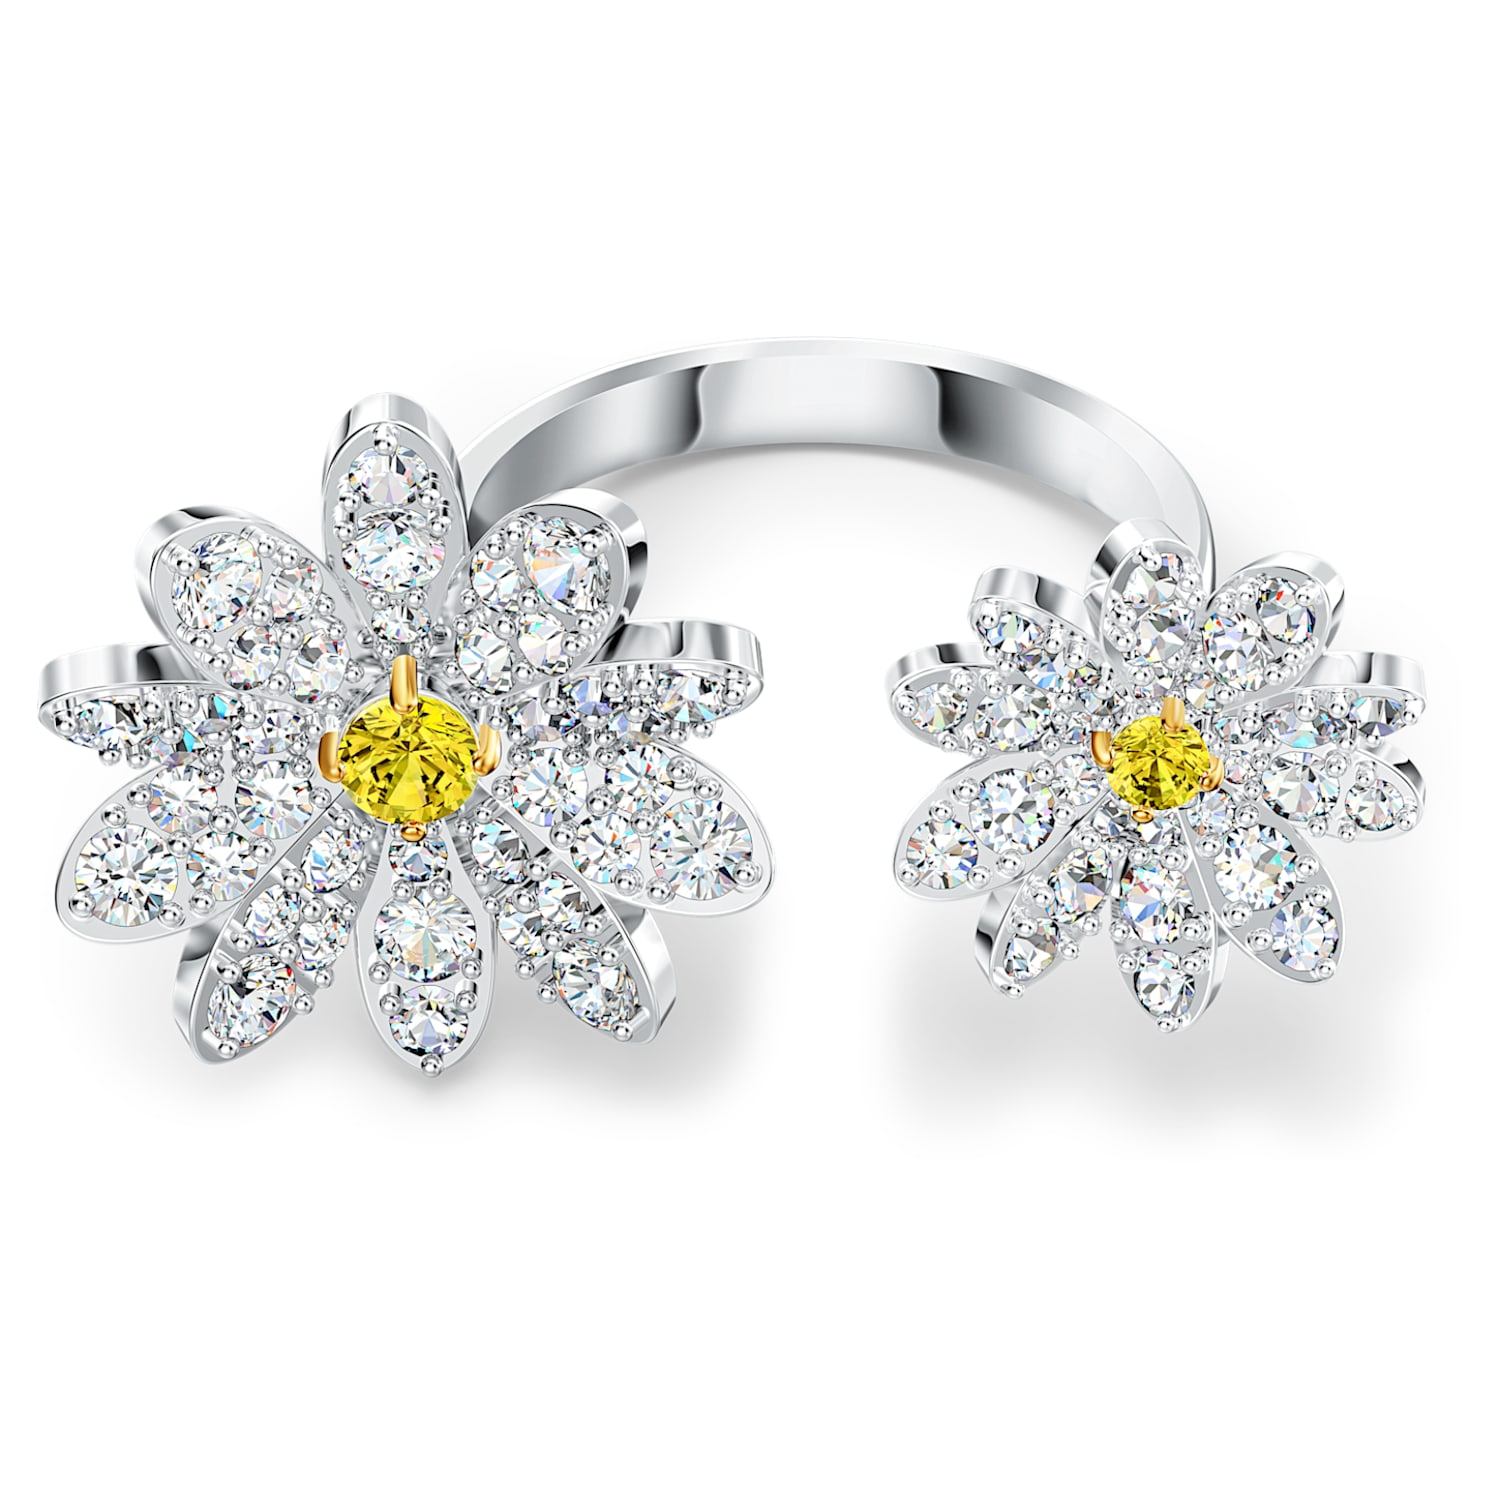 Swarovski Letný kvetinový prsteň s kryštálmi Swarovski Eternal Flower 5534948 52 mm